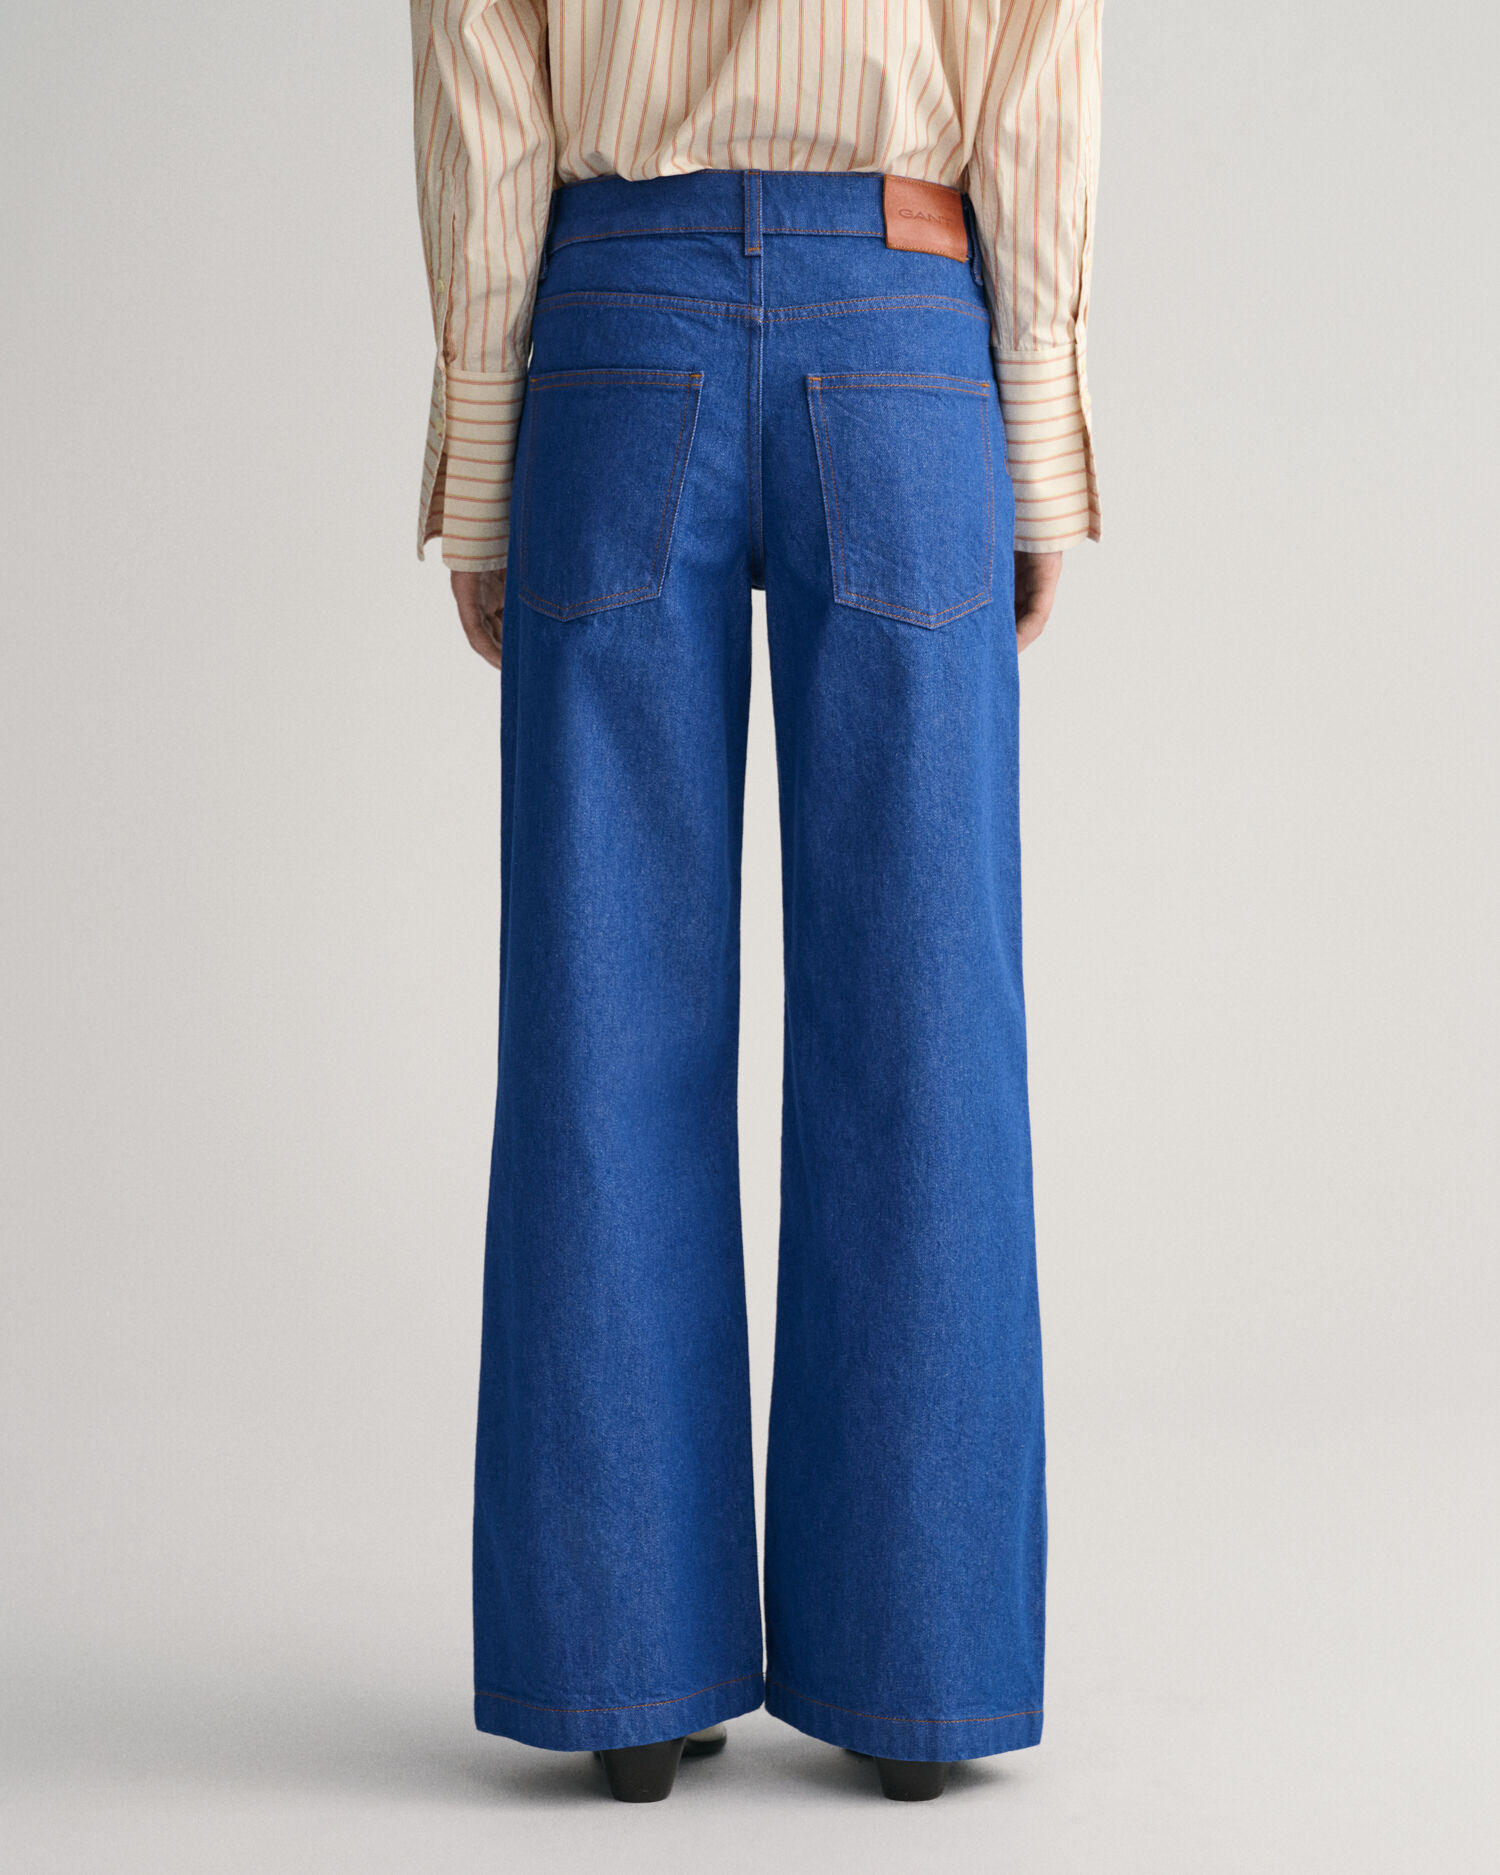 2-pack Super Soft Skinny Fit Jeans - Denim blue/Light denim blue - Kids |  H&M